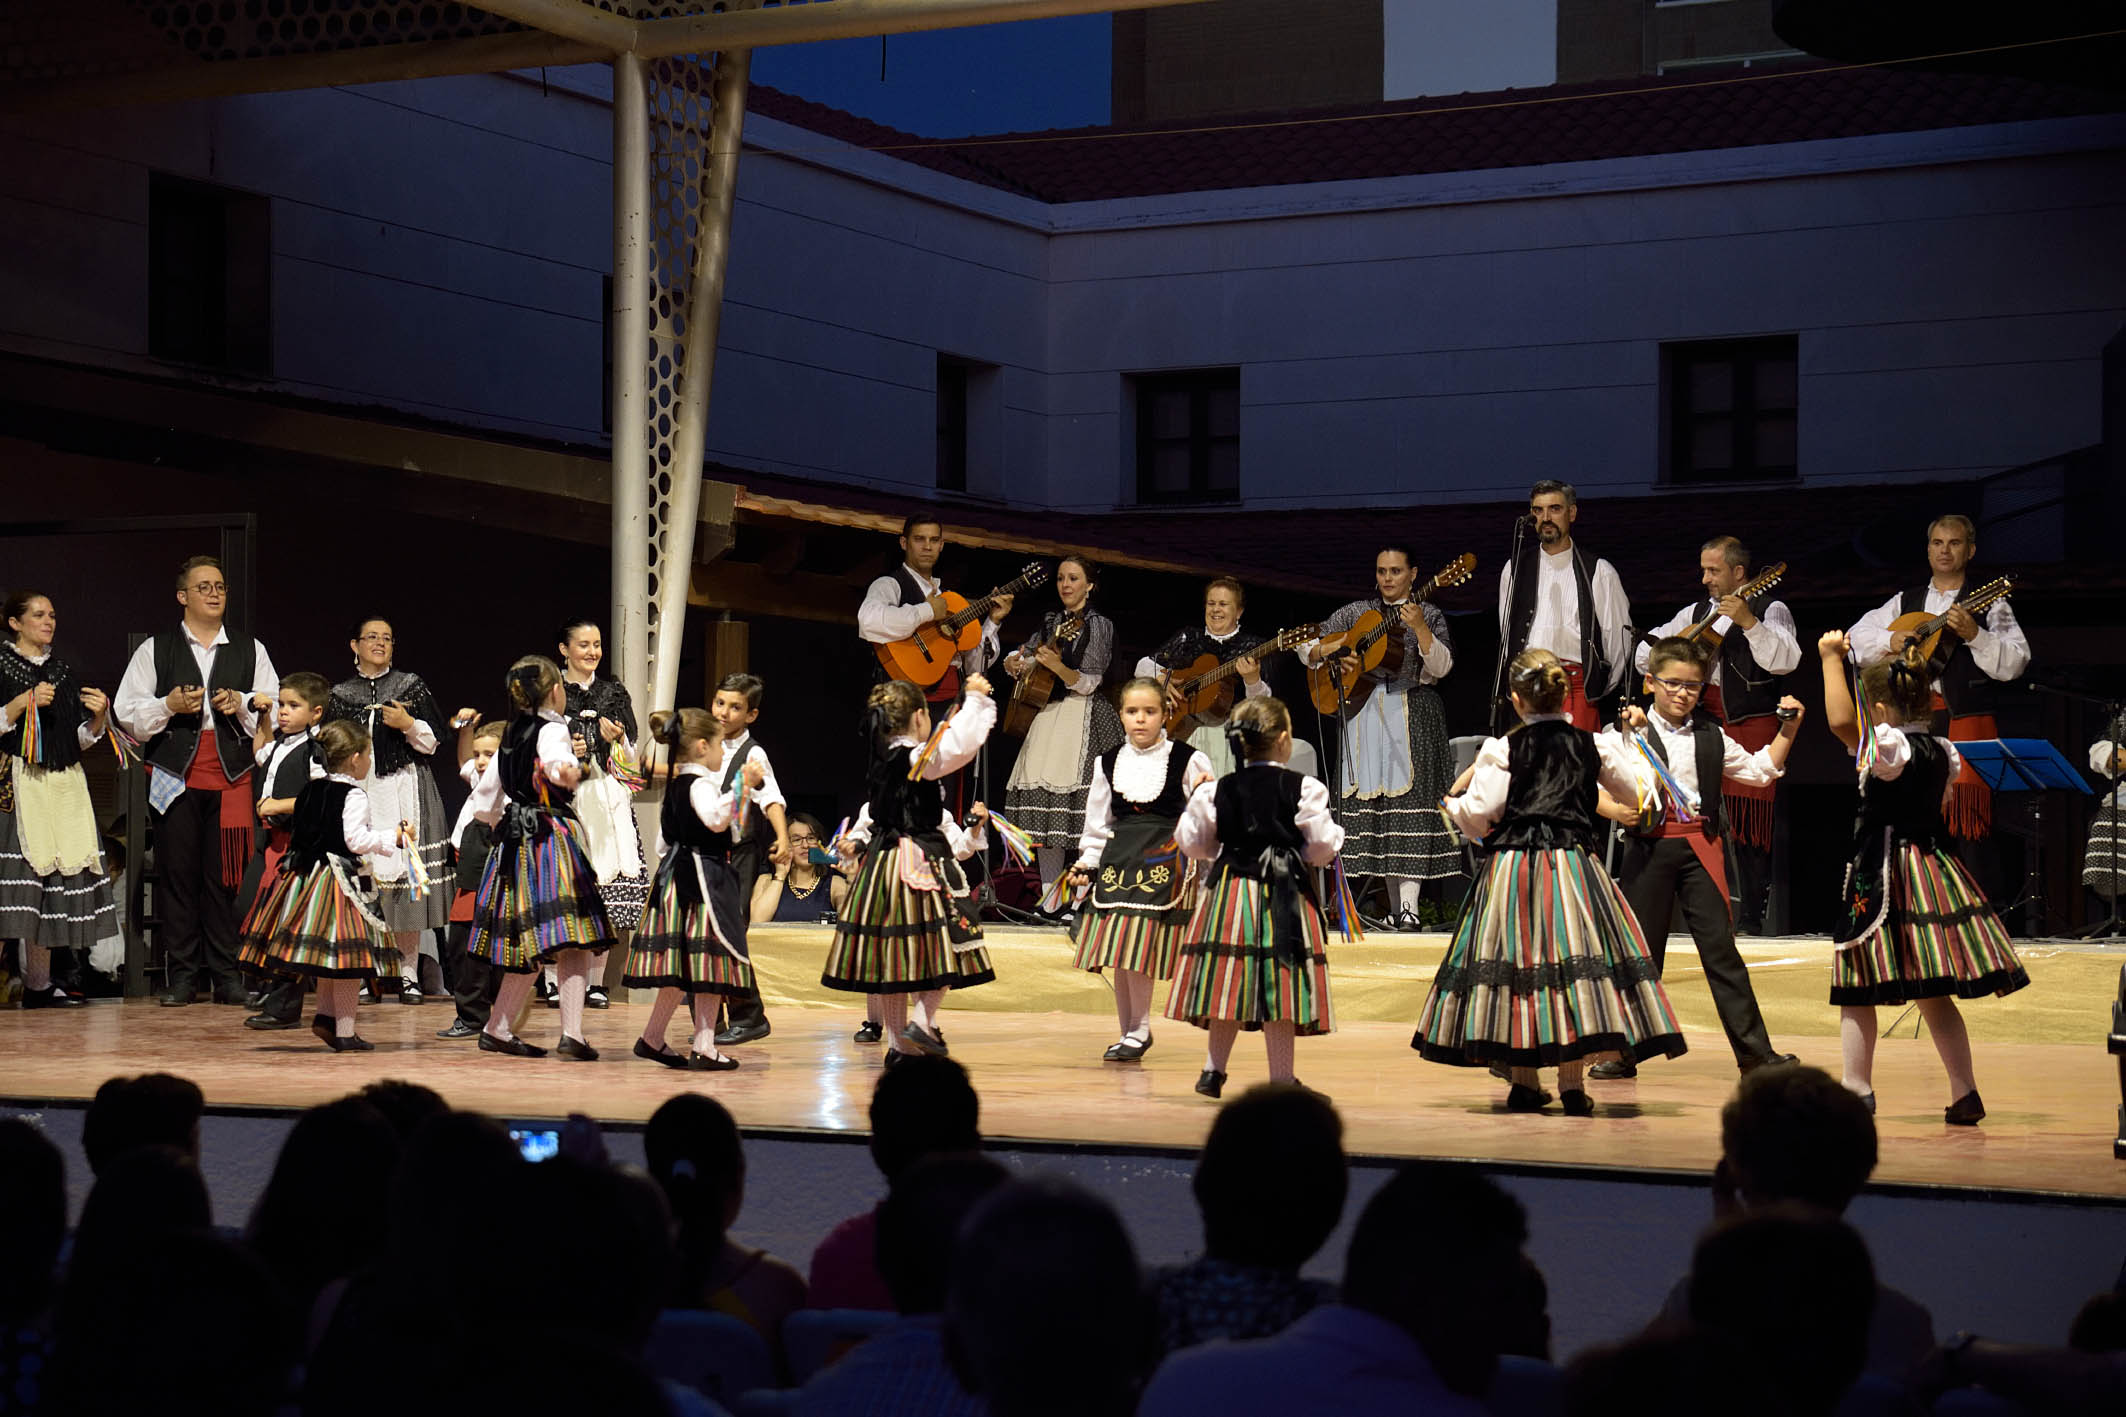 Bailes lorquinos en el XVII Festival Infantil de Folklore “Lugar Nuevo” de Argamasilla de Alba